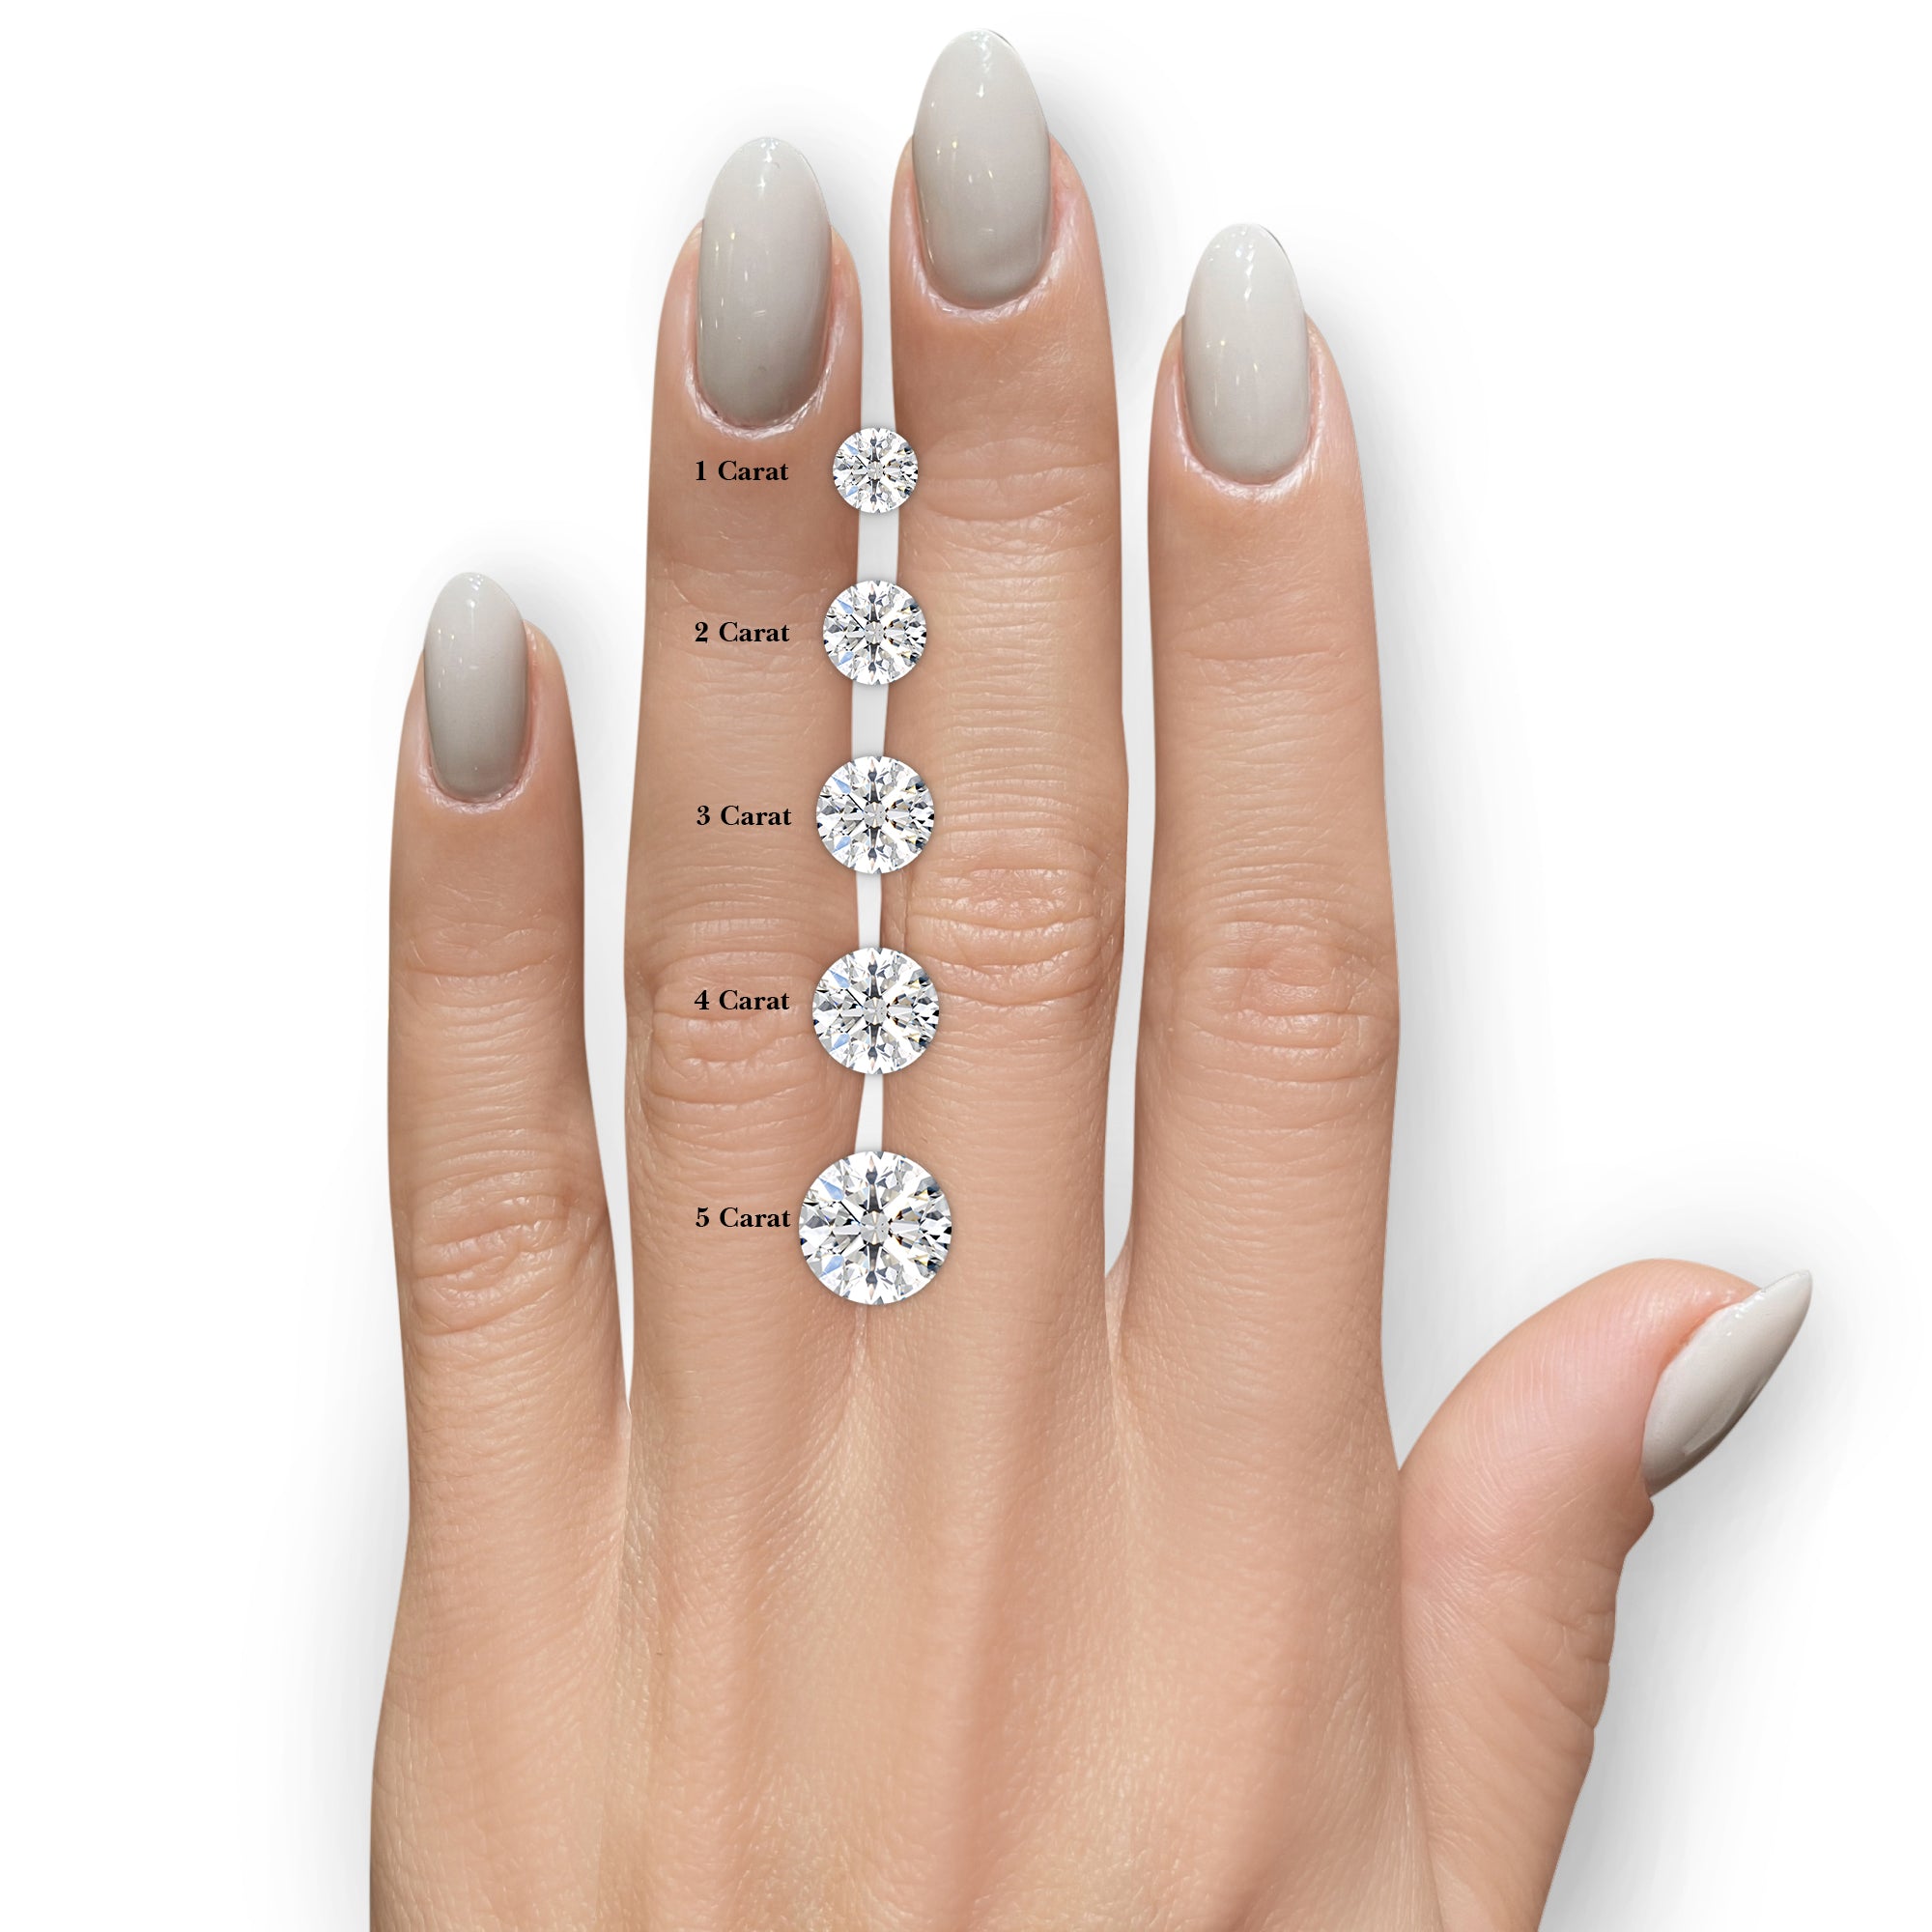 Lillian Diamond Engagement Ring -14K Rose Gold